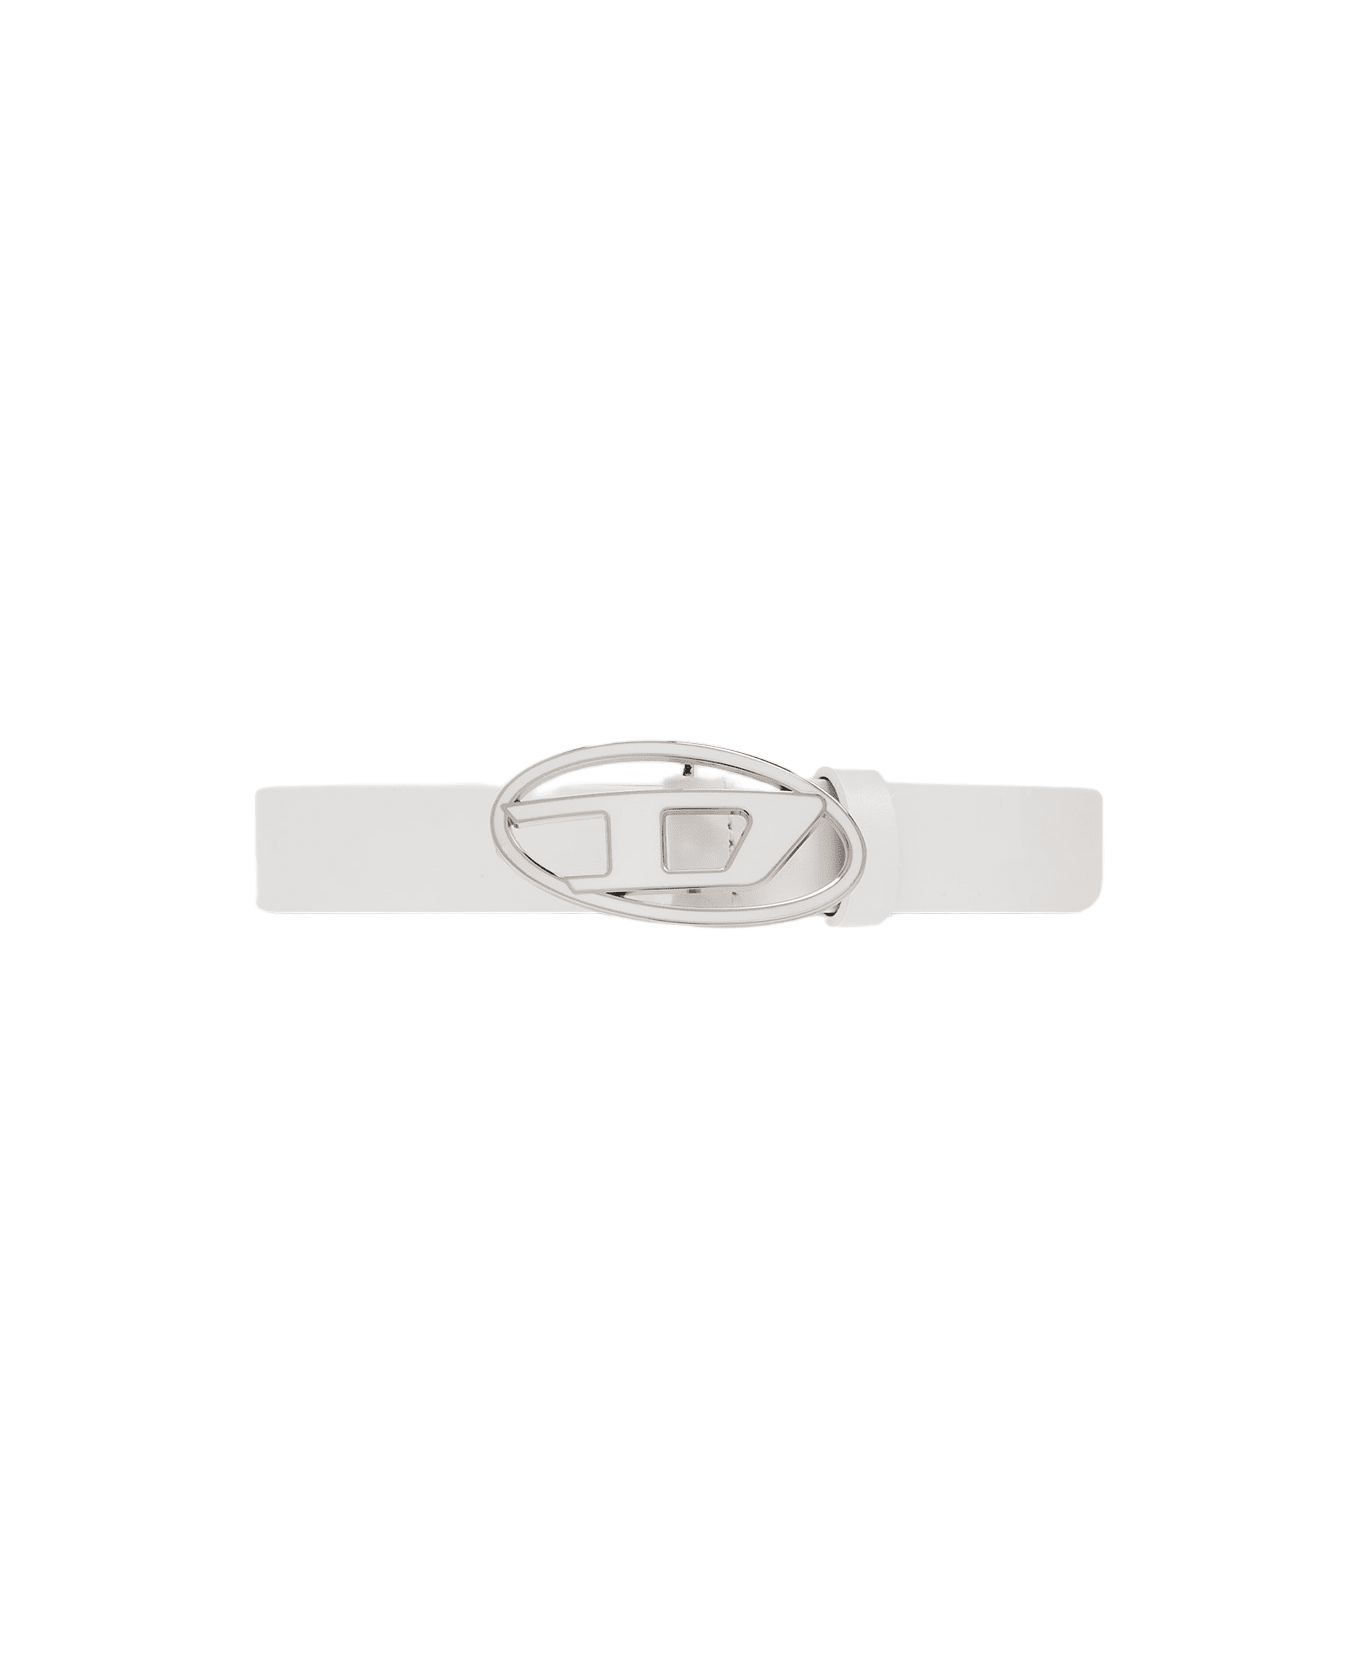 Diesel Oval D Logo B-1dr 25 Belt White Leather Belt With Oval-d Buckle - B-1dr 25 Belt - Bianco